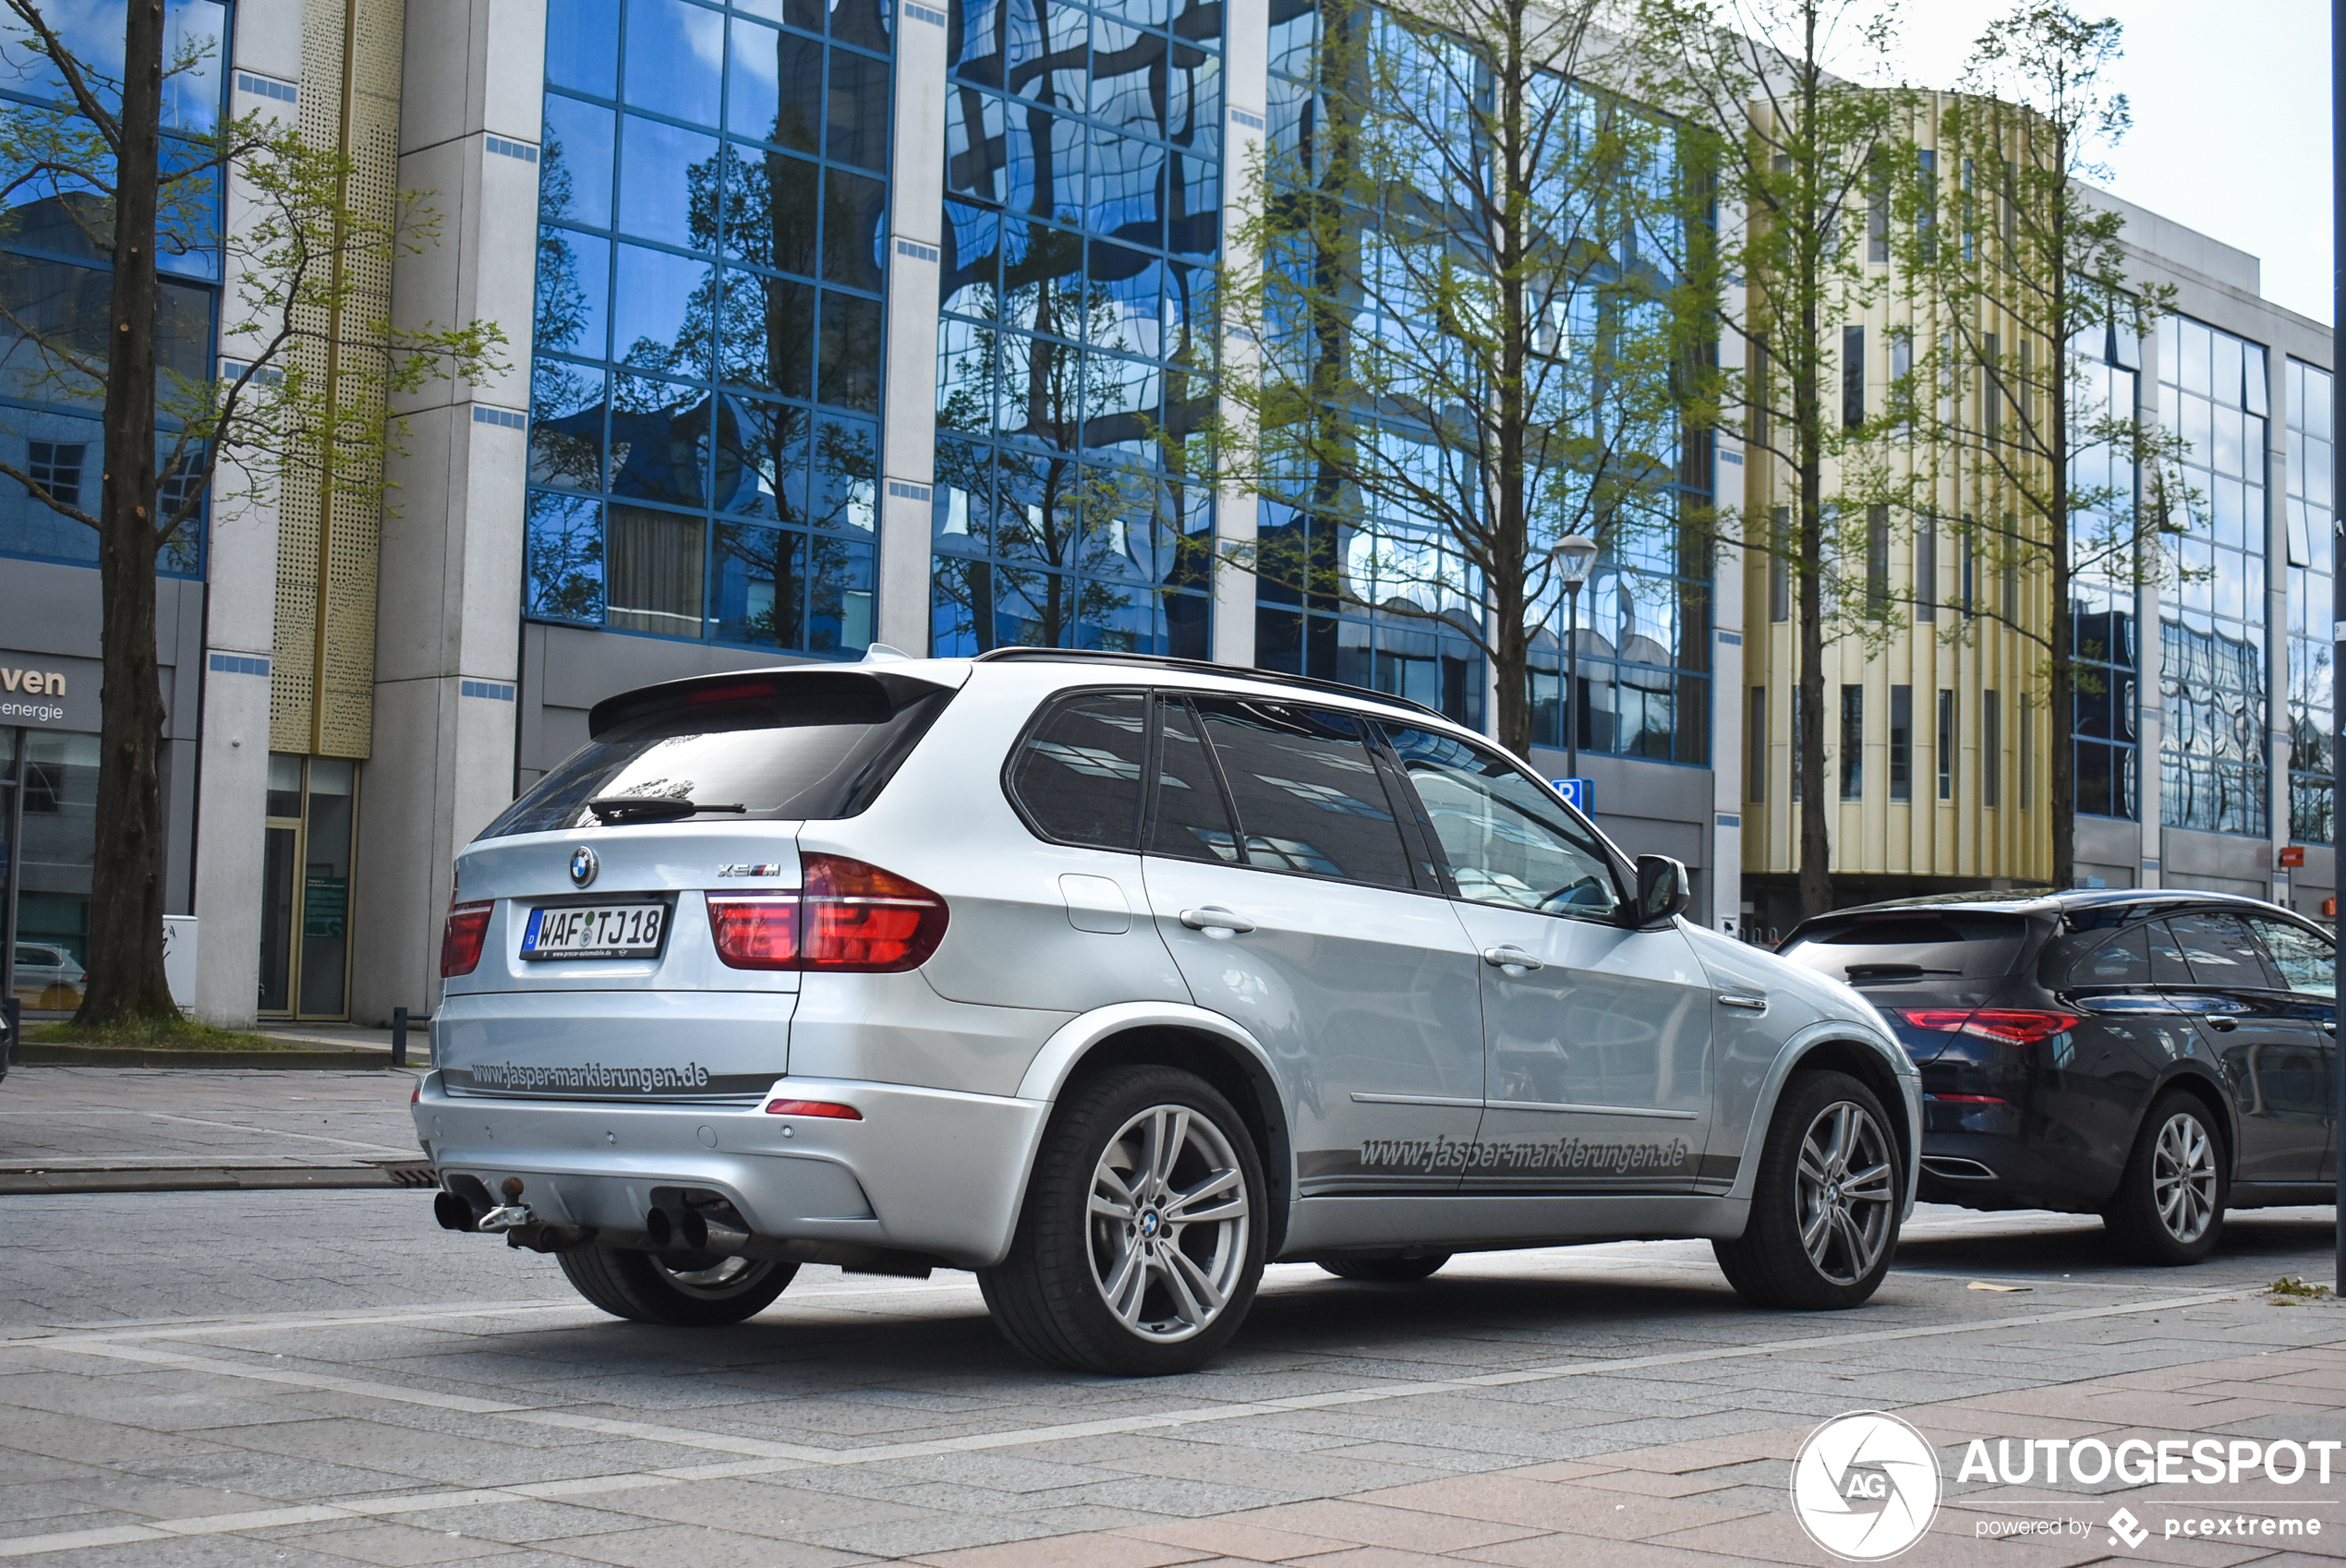 BMW X5 M E70 - 30 April 2023 - Autogespot